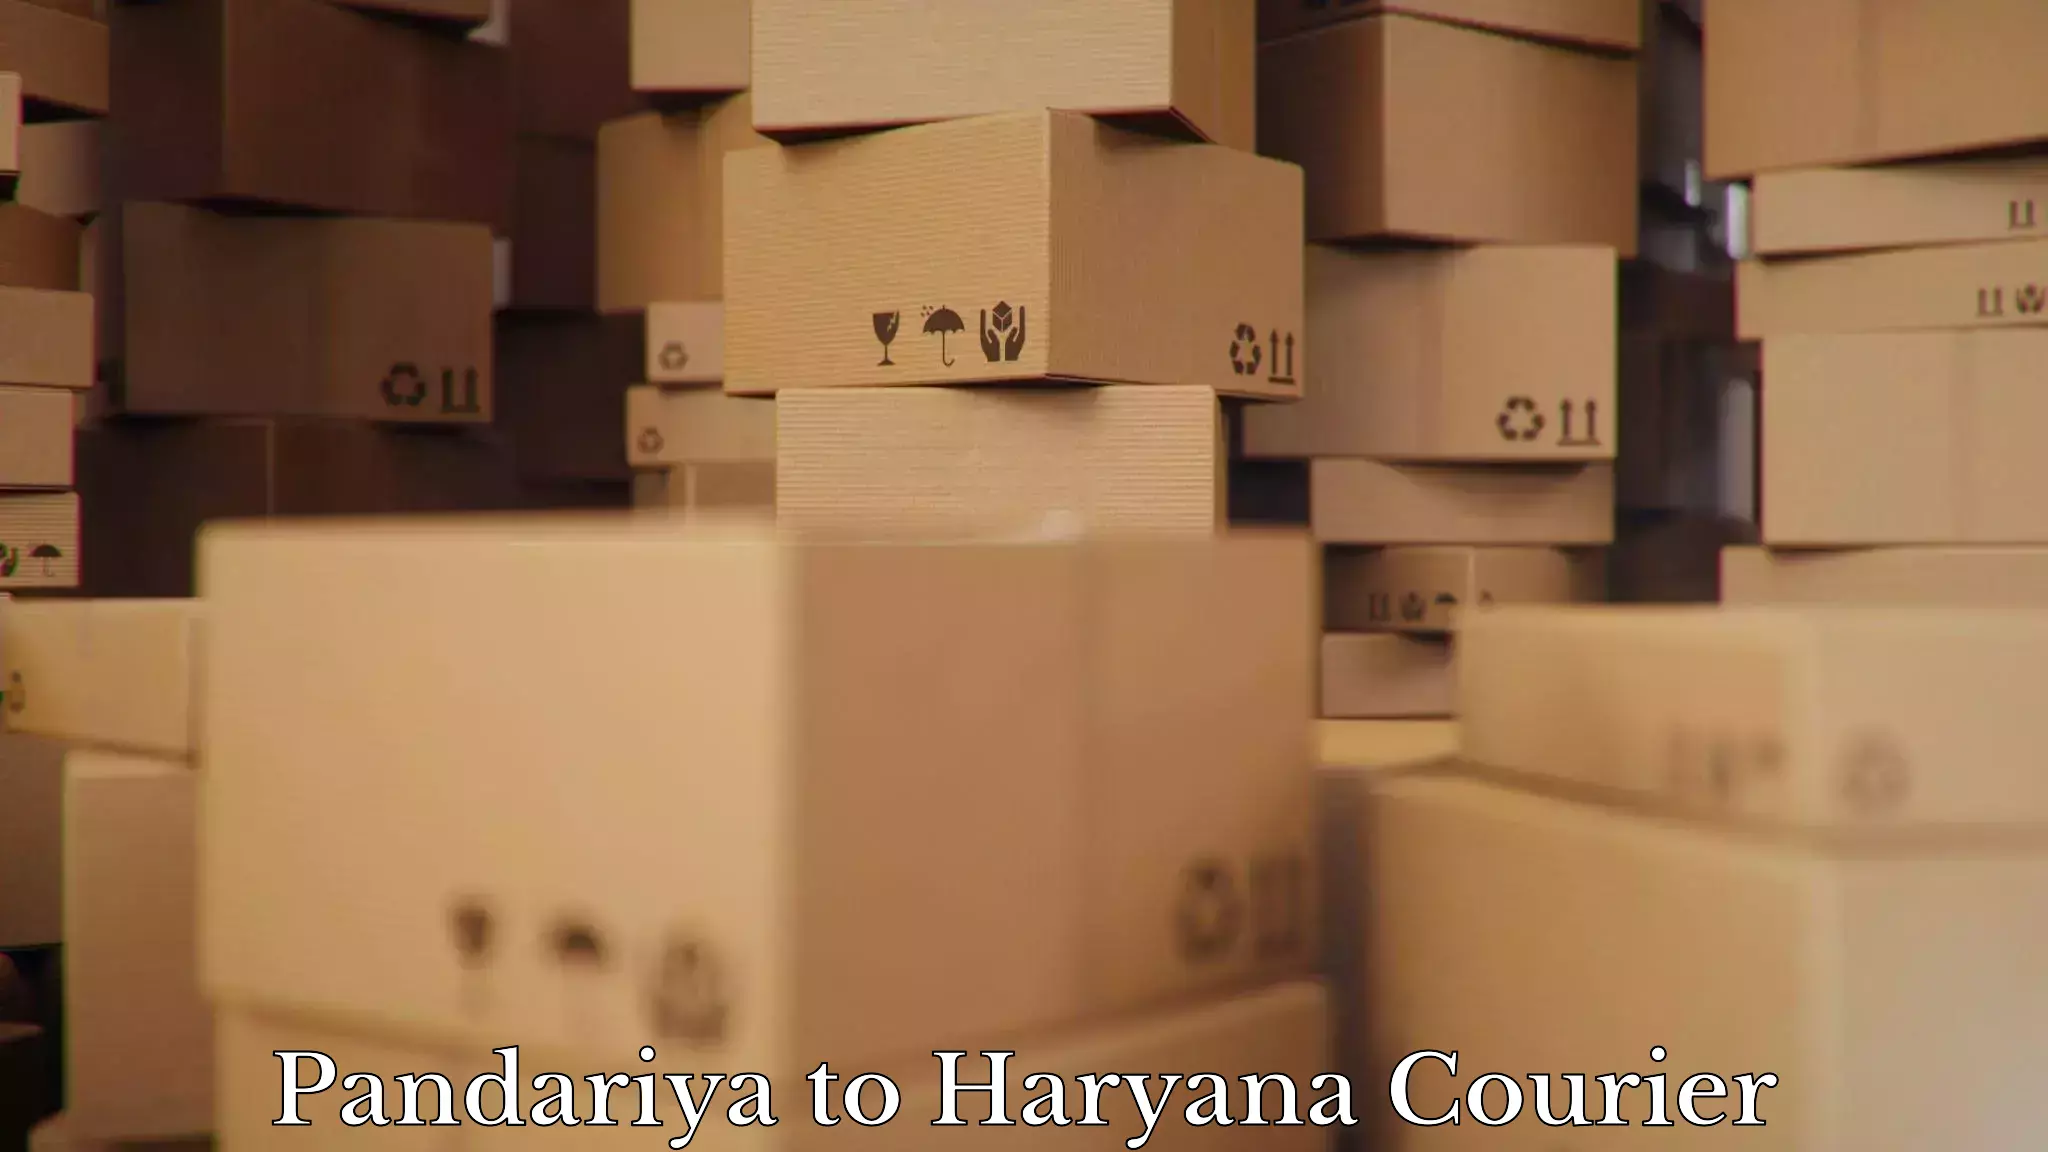 Reliable moving assistance Pandariya to Haryana